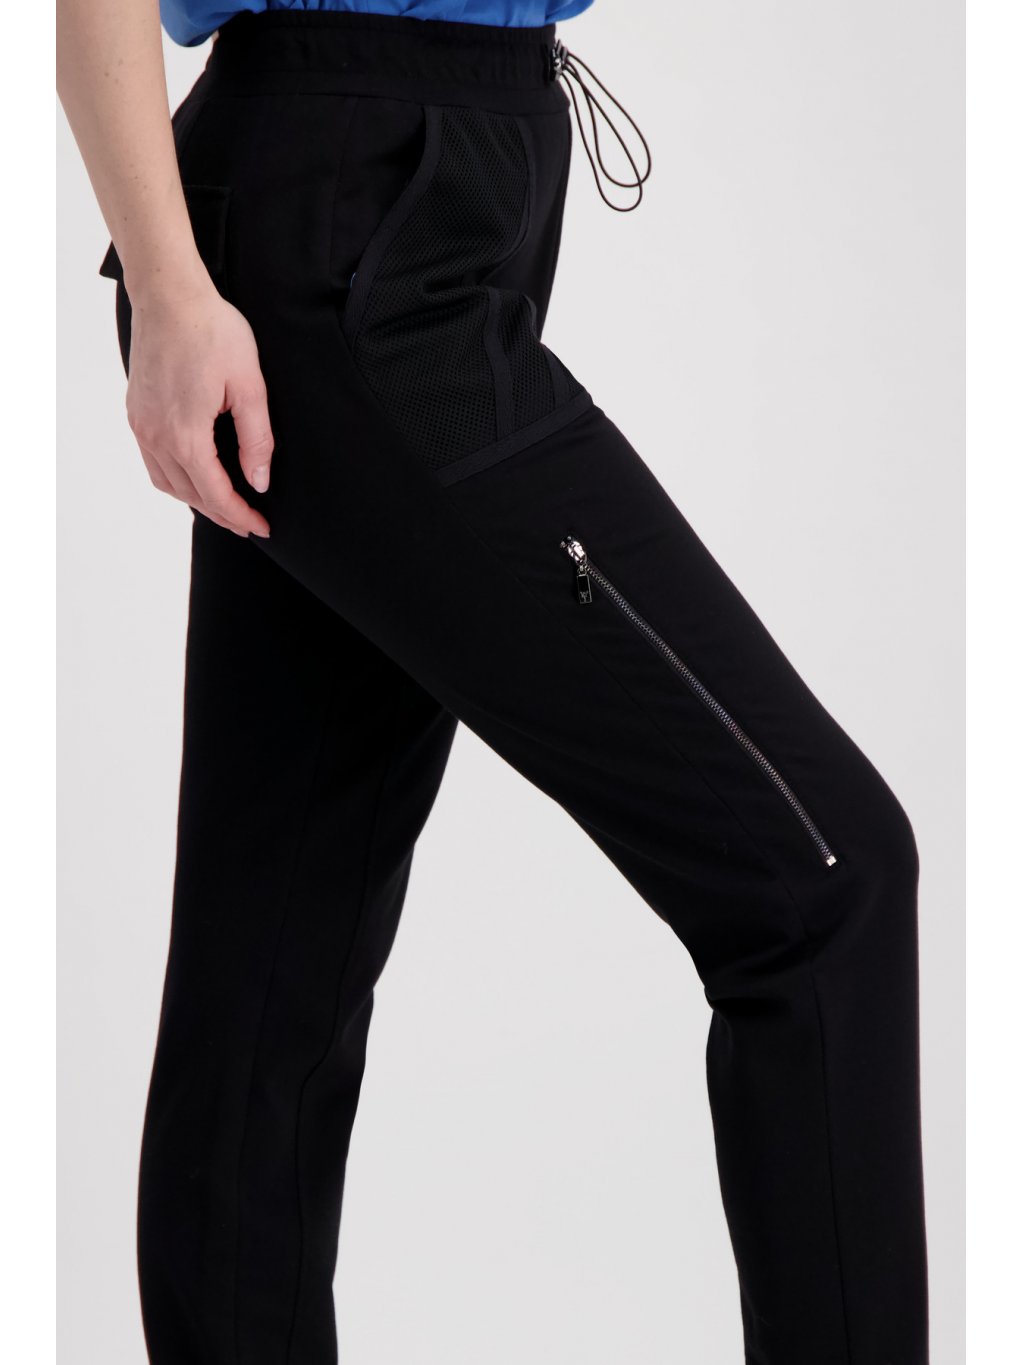 Kalhoty Monari 7030 černé se síťovanou kapsou